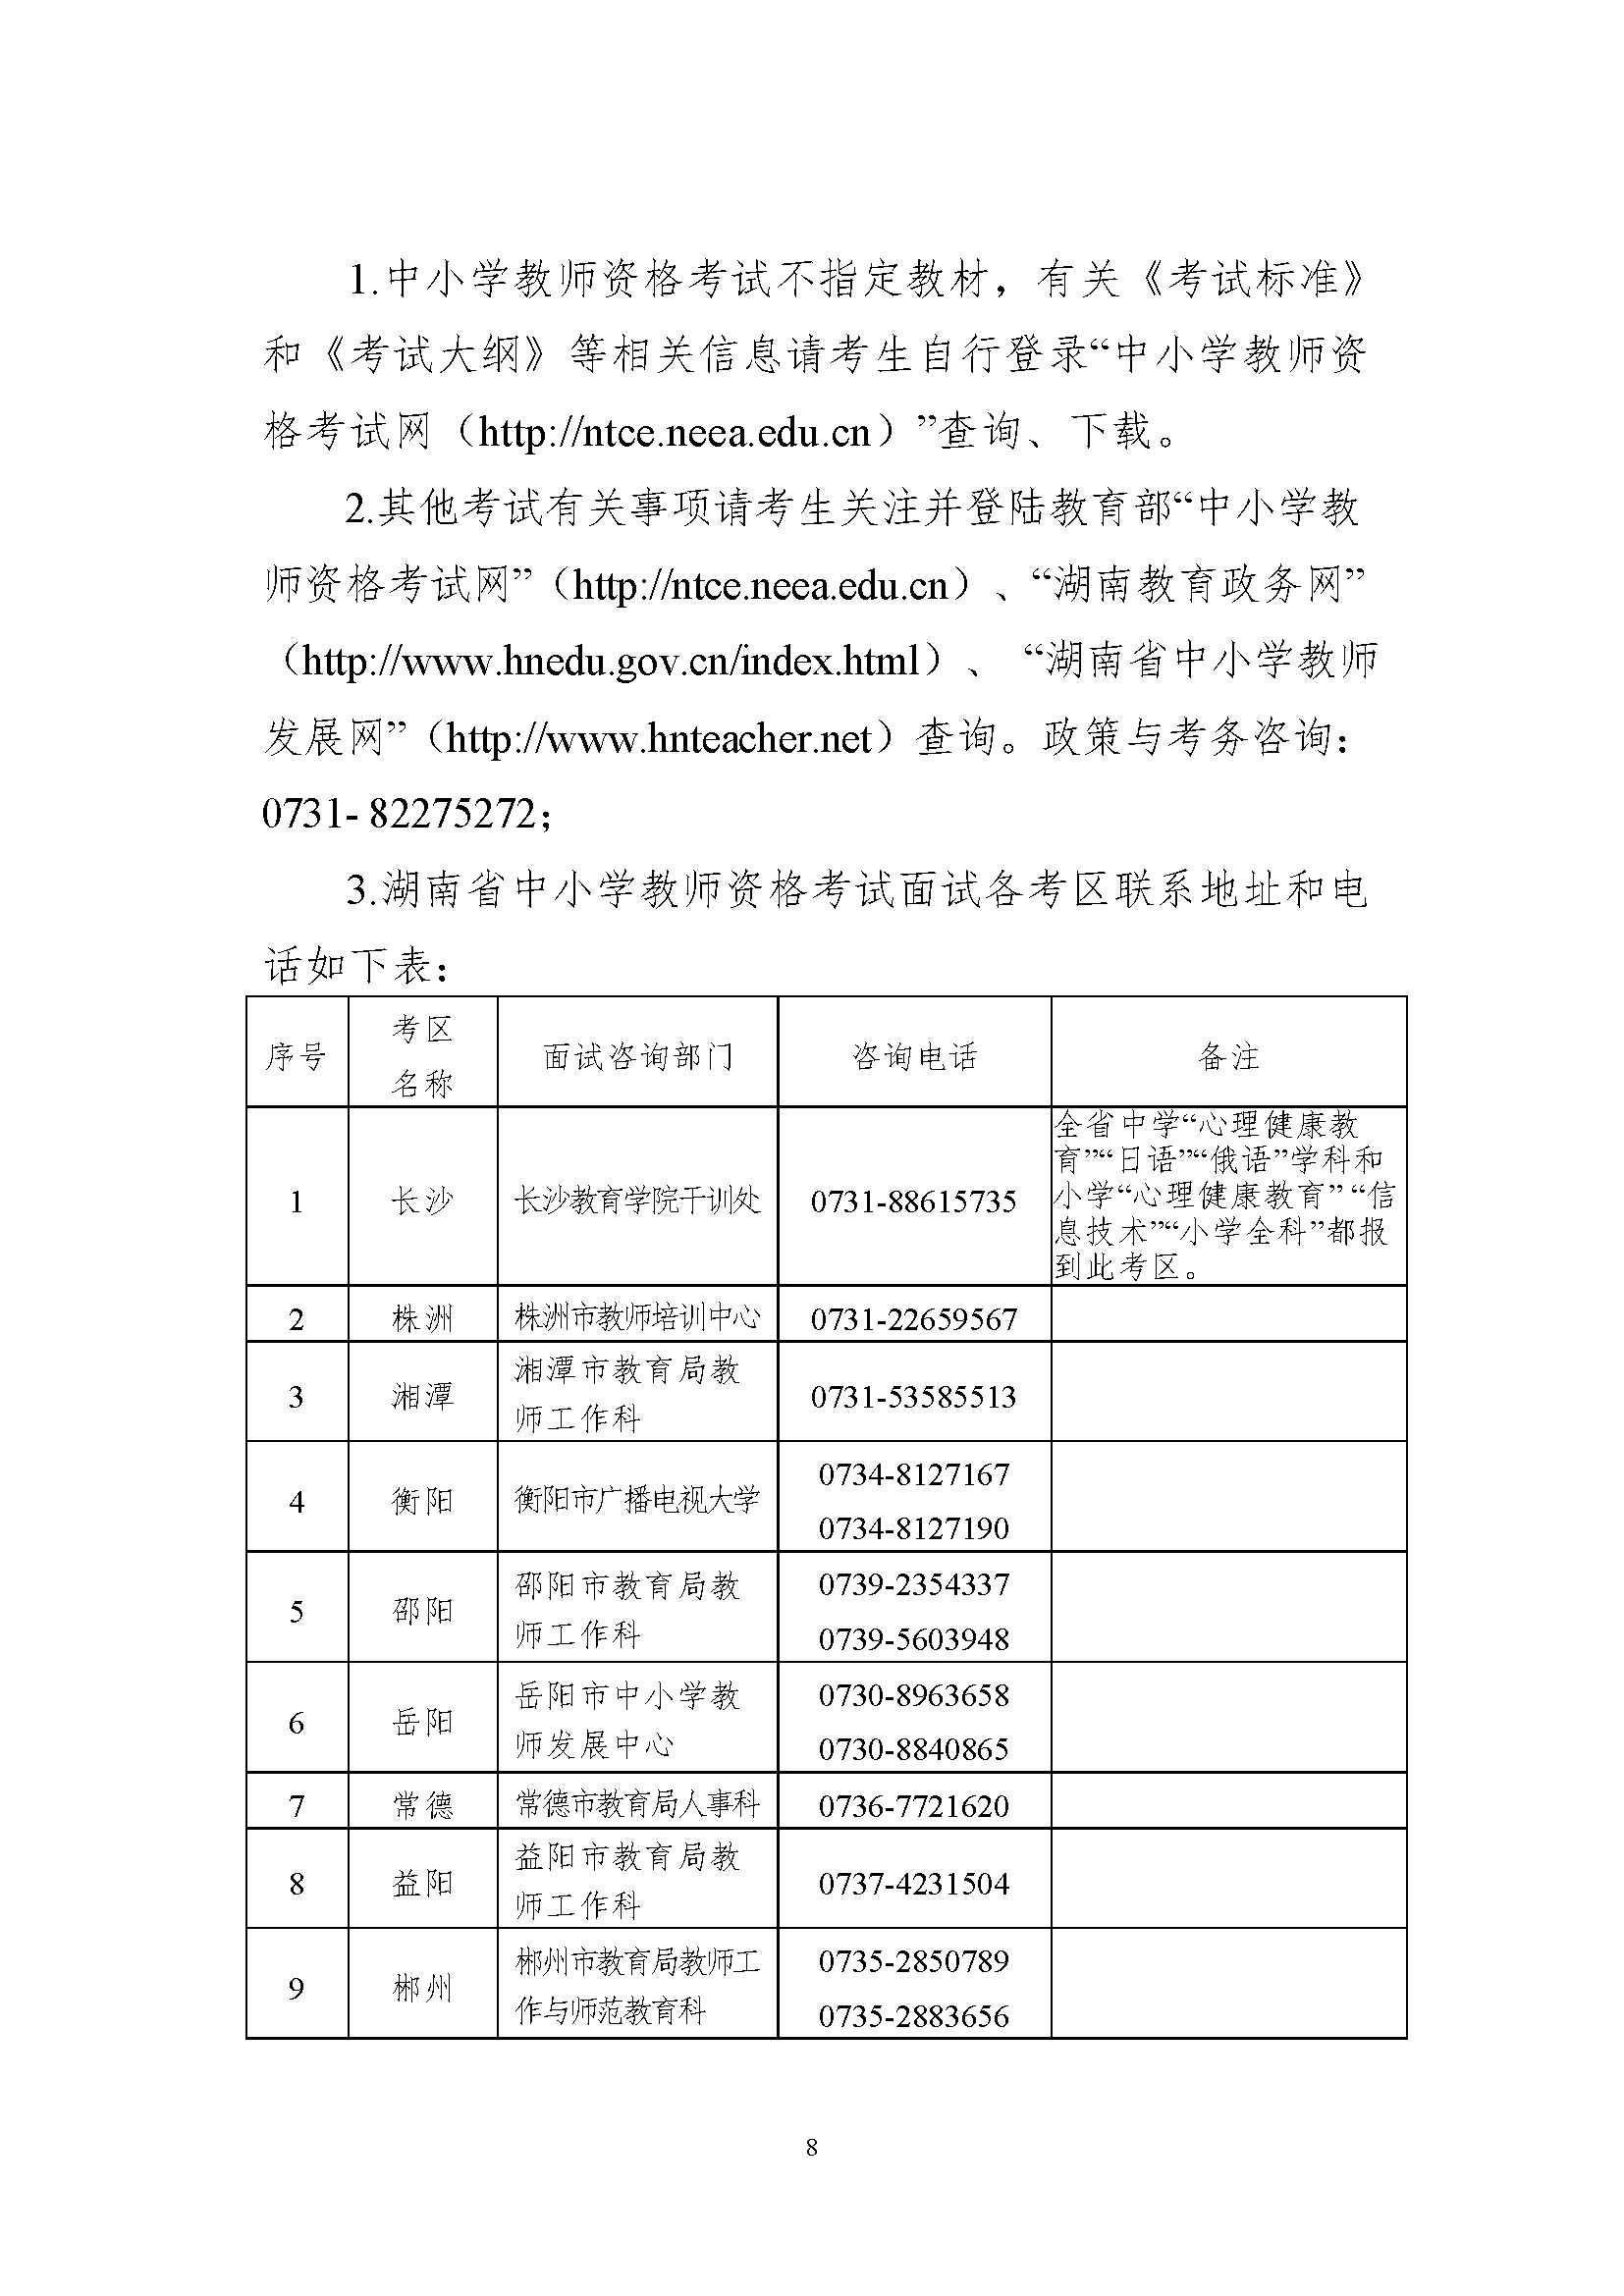 2018年下半年湖南中小学教师资格考试 (面试)公告